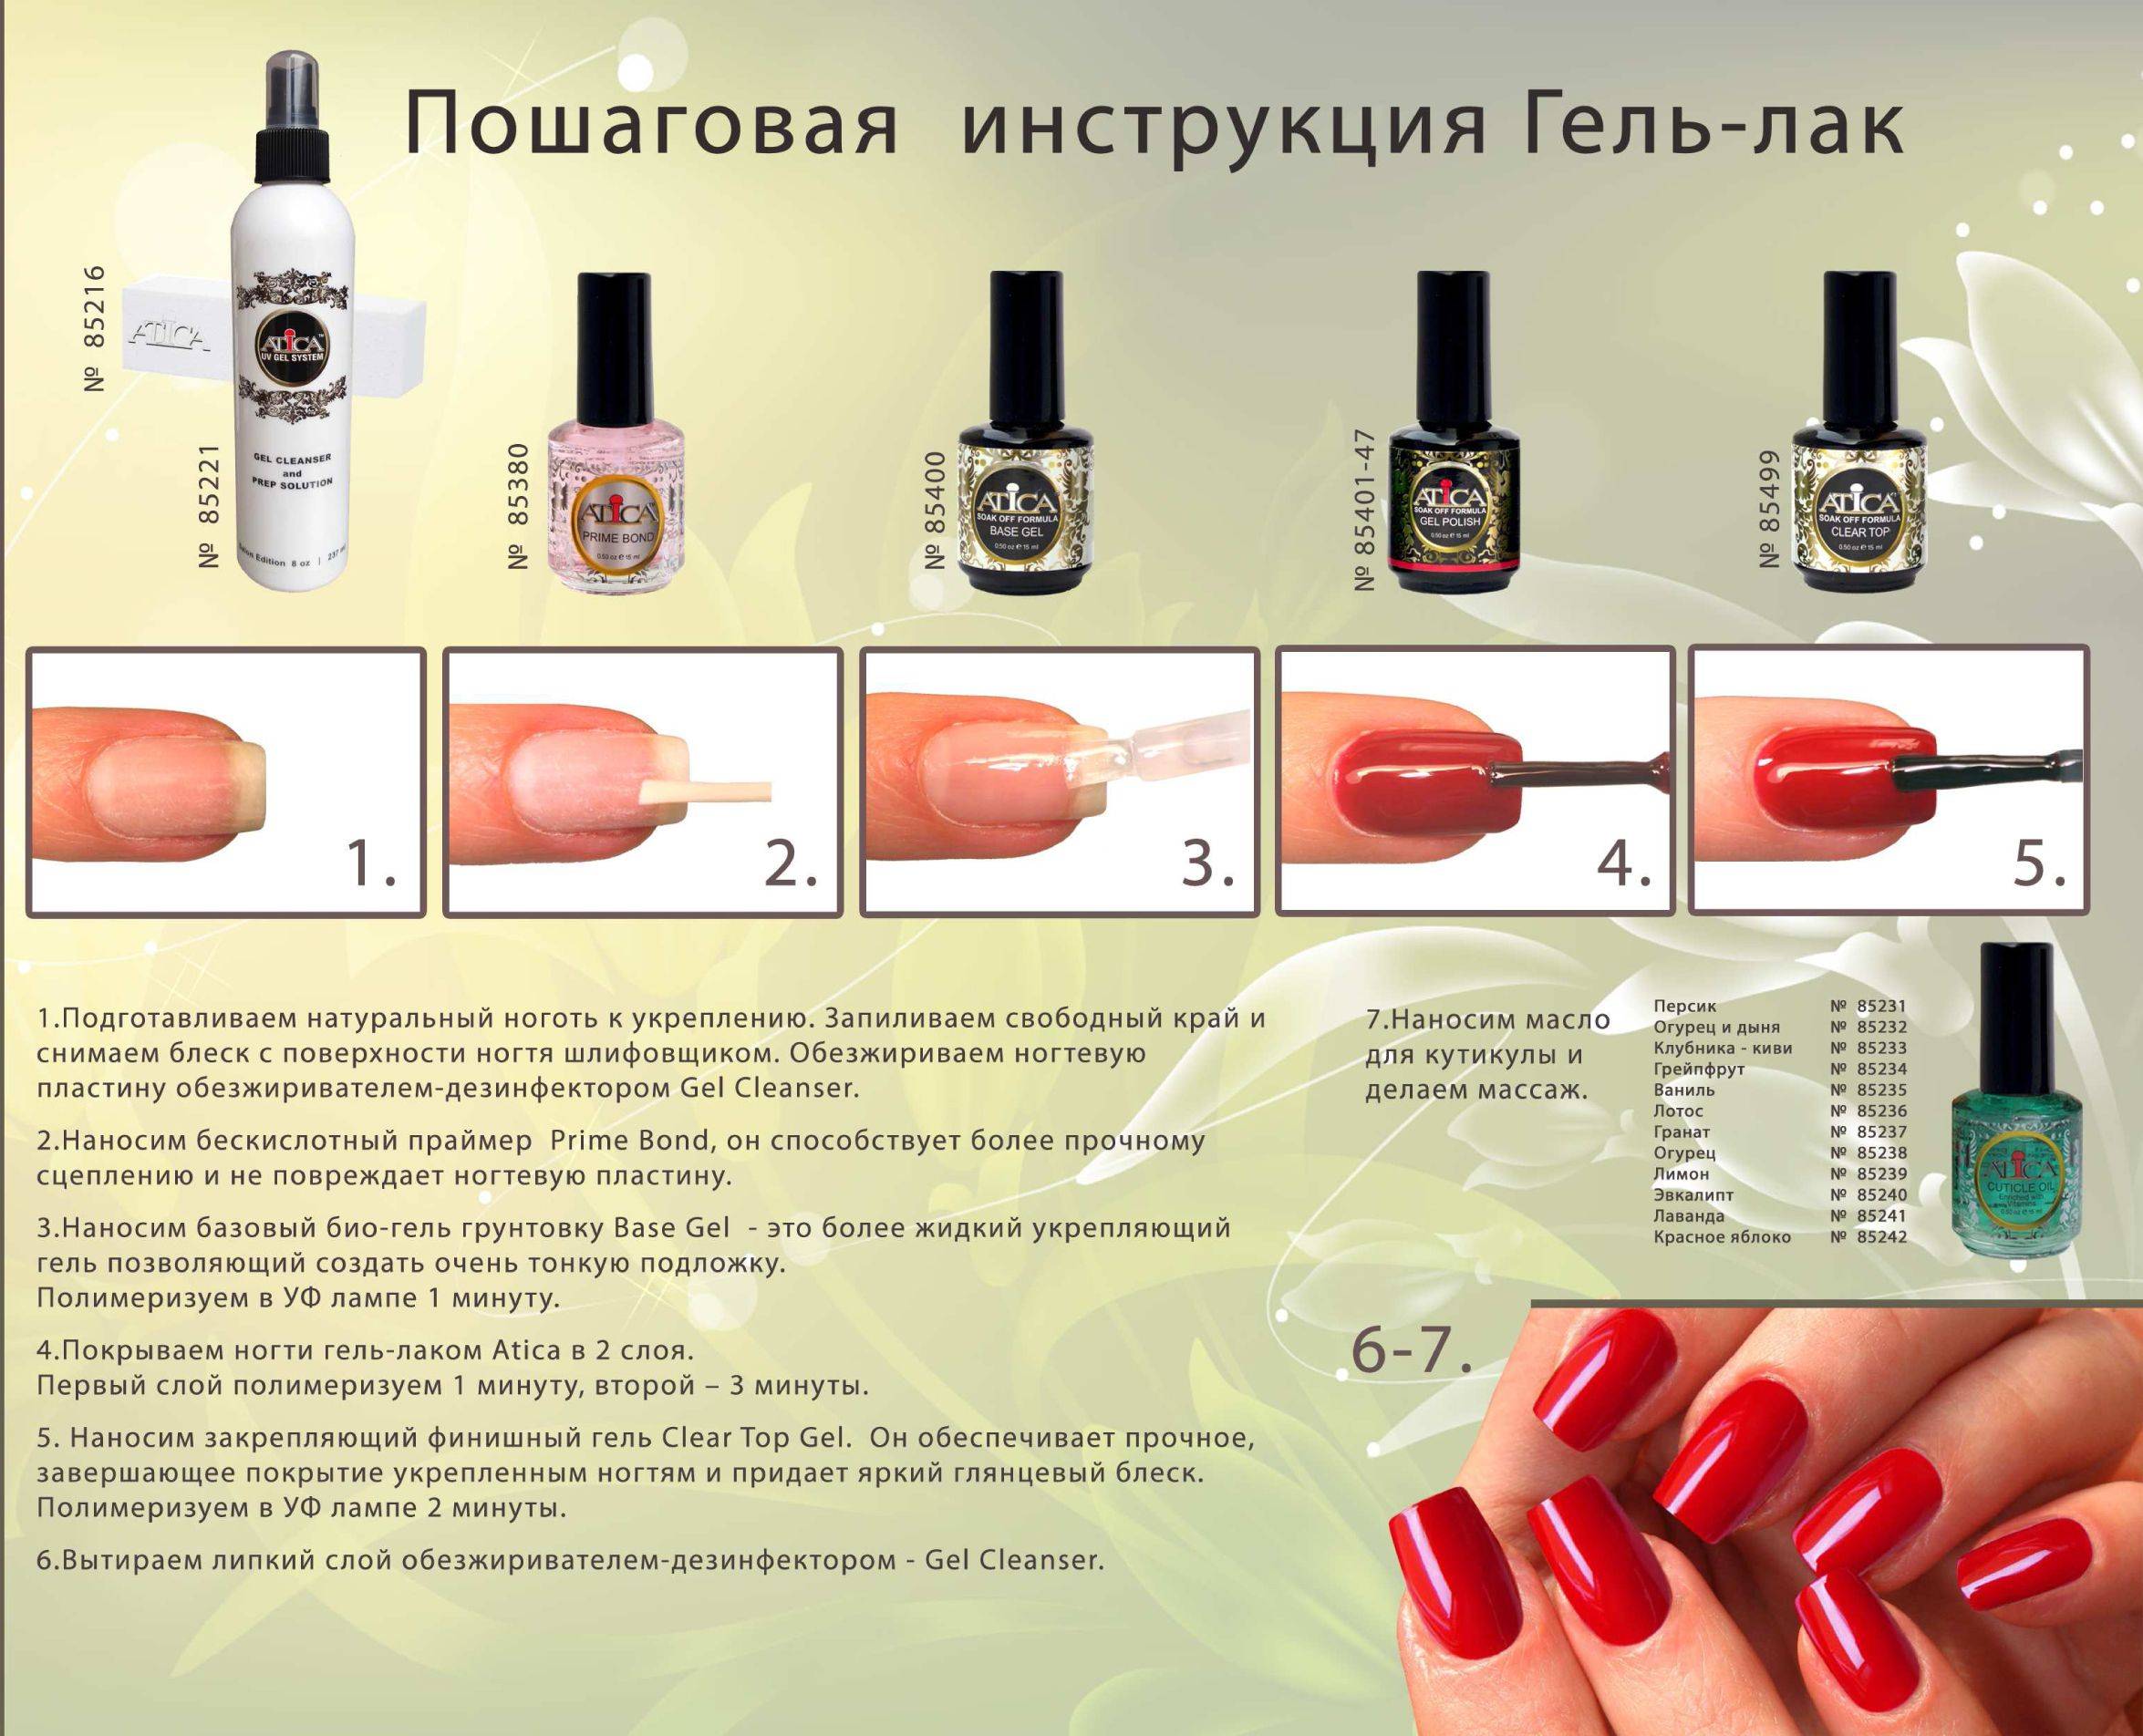 Трафареты для ногтей: виды, способы использования. как сделать трафареты для ногтей? :: syl.ru